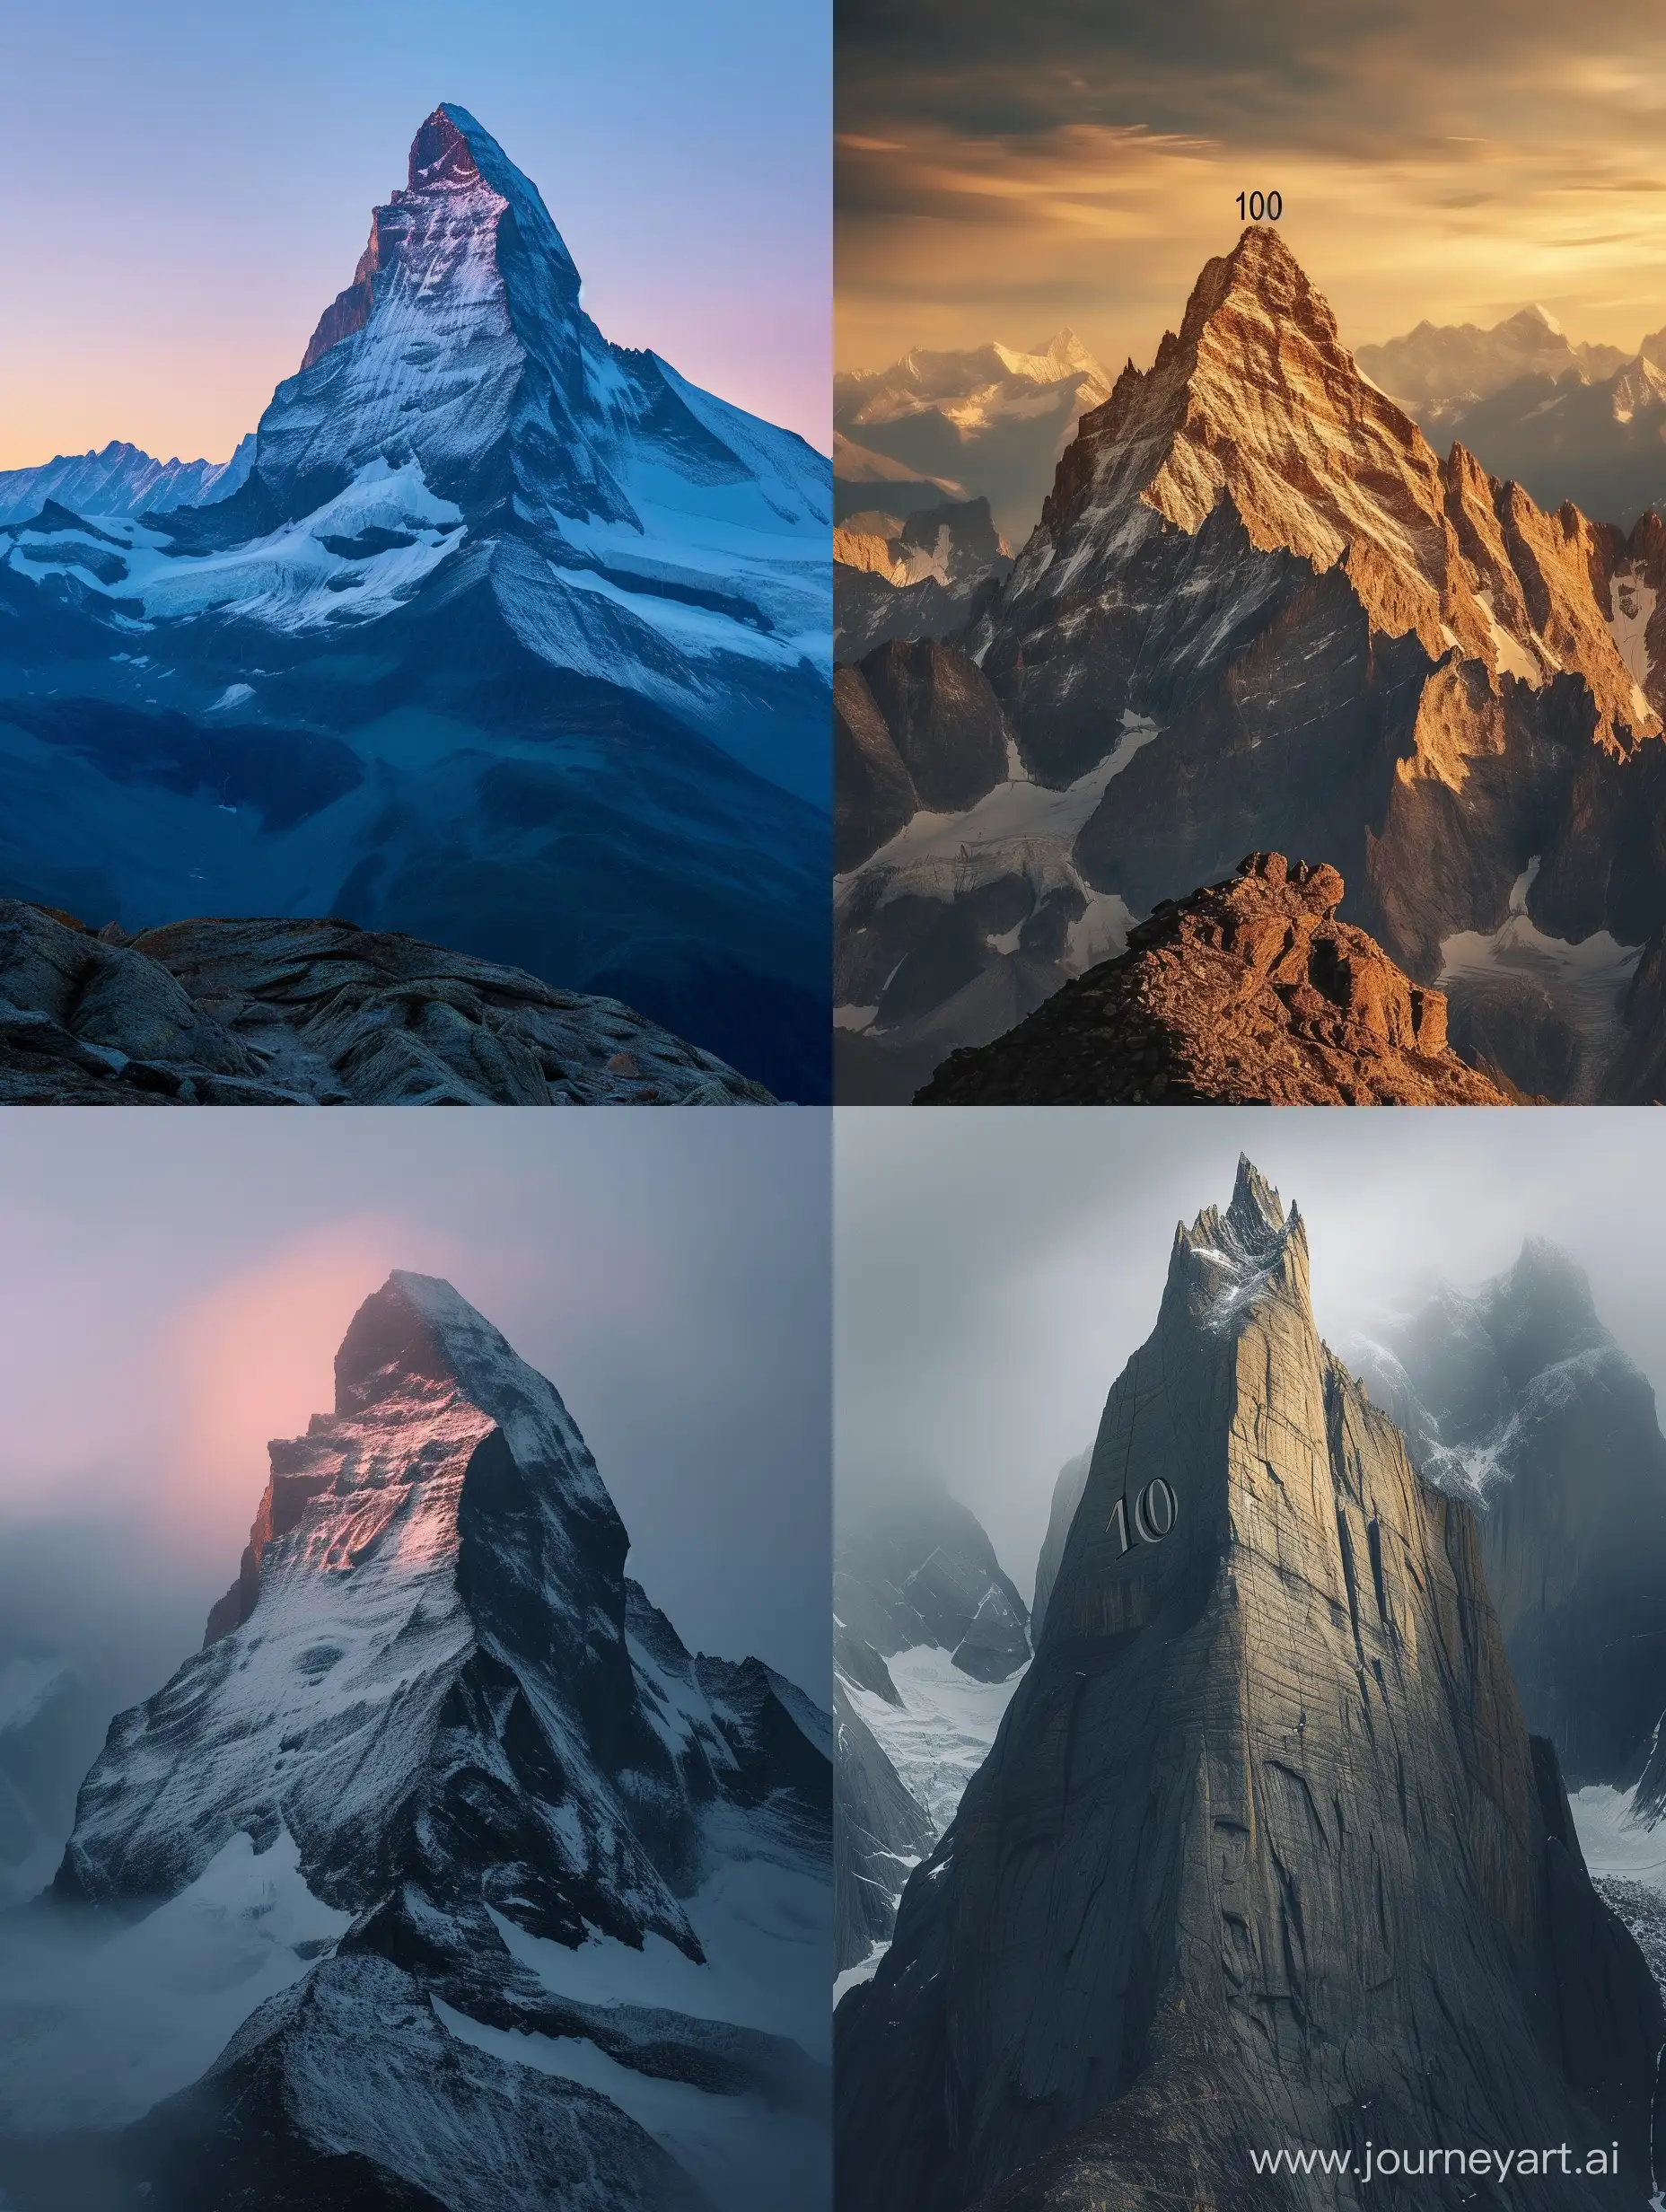 Majestic-Mountain-Peak-in-1000-Shapes